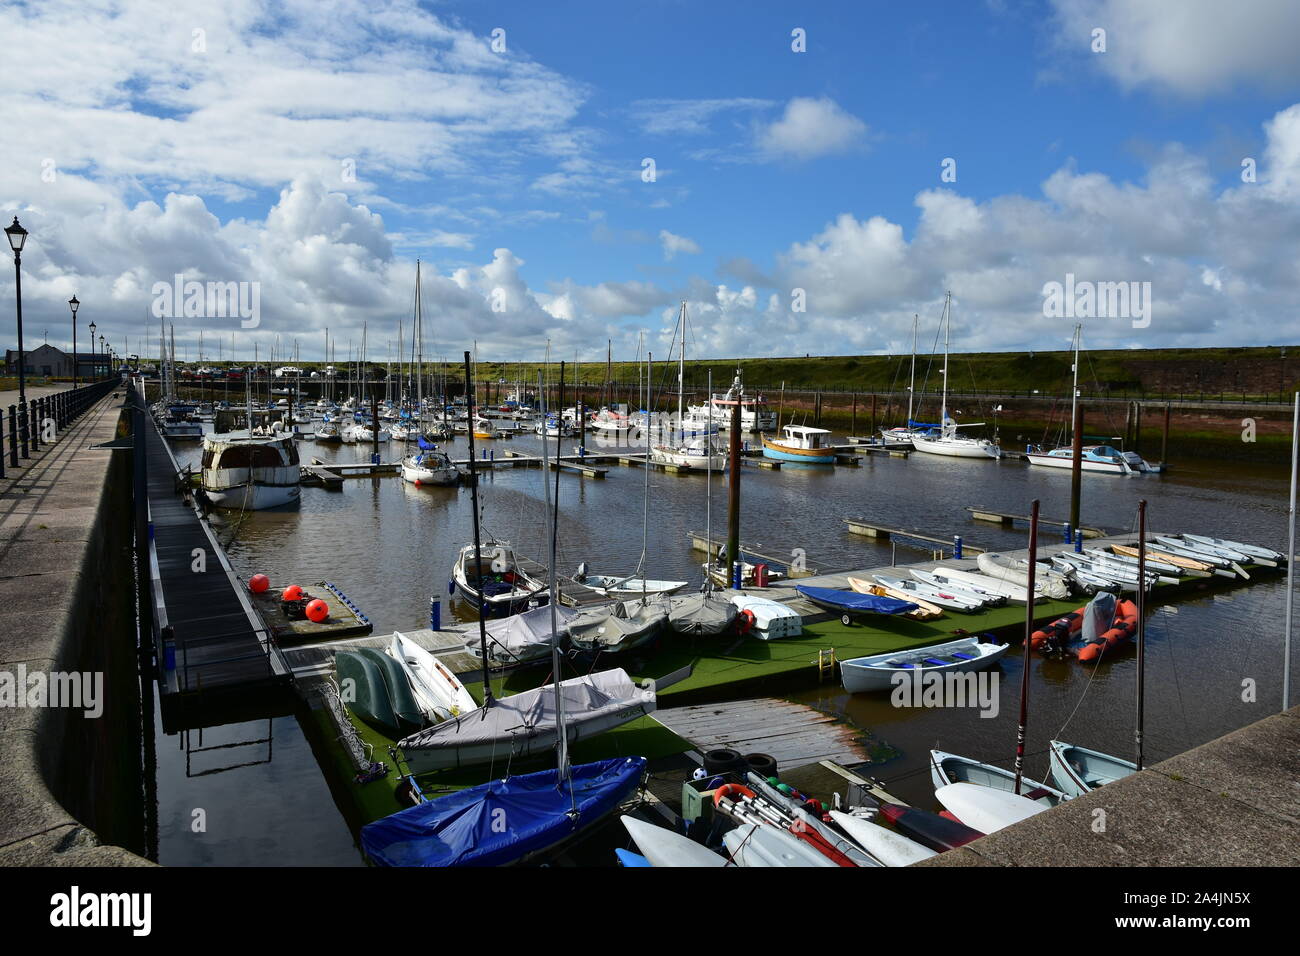 The marina, Maryport, Cumbria Stock Photo